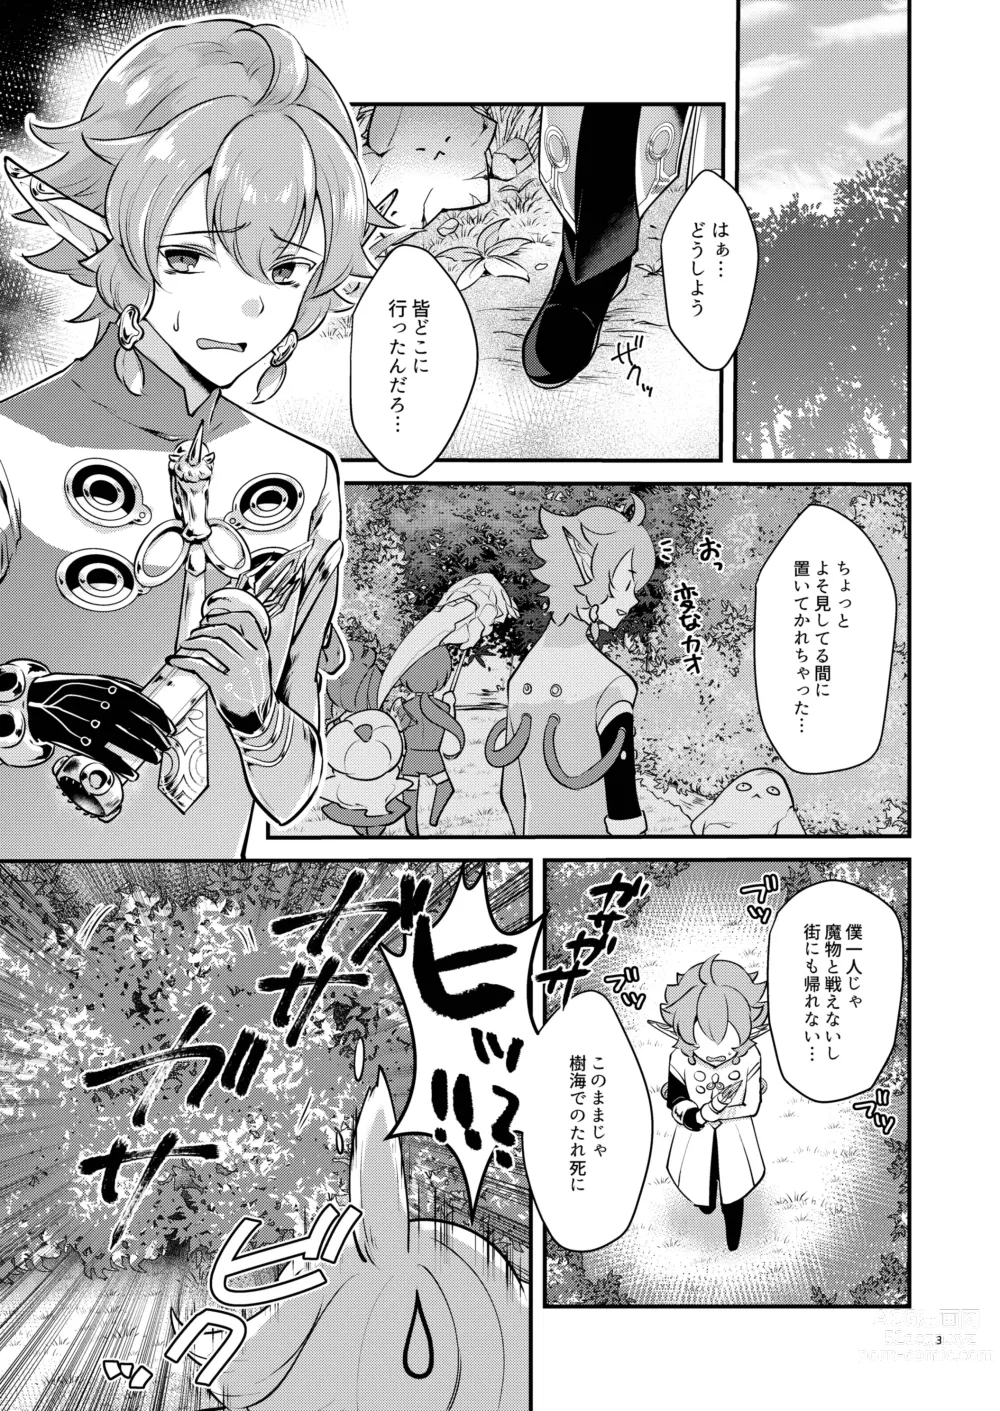 Page 3 of doujinshi Hound-chan wa Ecchi ga Shitai.